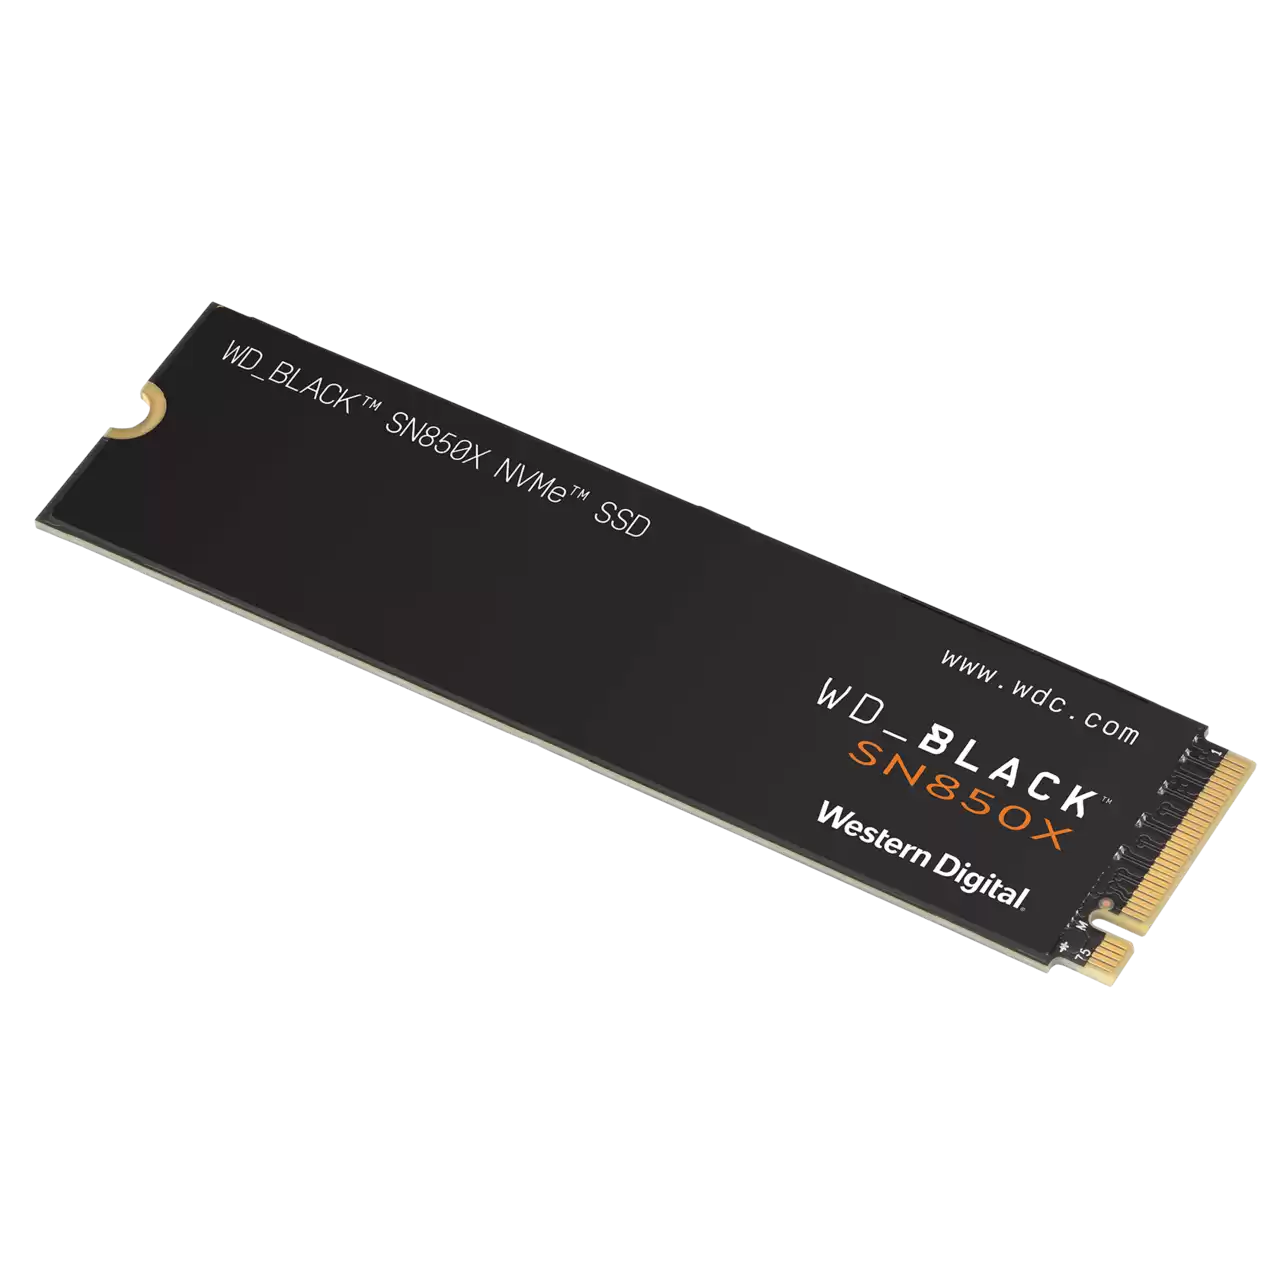 WD Black™ SN850X 2TB PCIe Gen 4 SSD Without Heatsink